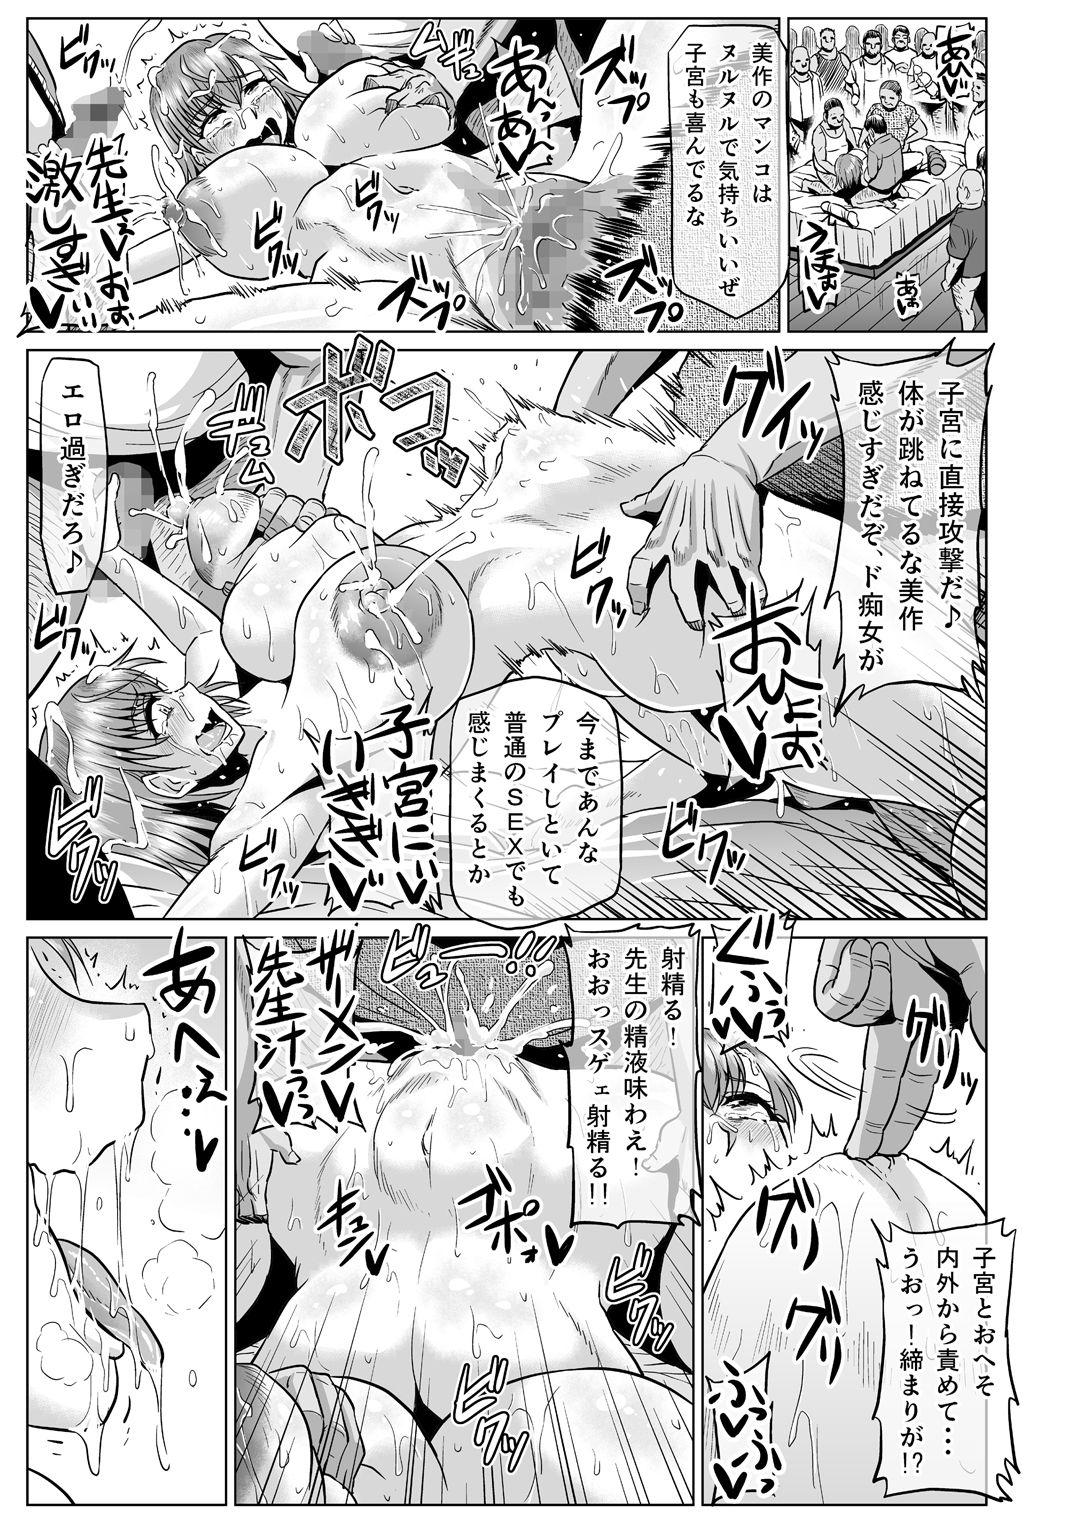 Doggy Style Porn Toaru Nikubenki no Infinite Birth Academy Hen - Toaru kagaku no railgun Toaru majutsu no index Dominatrix - Page 12